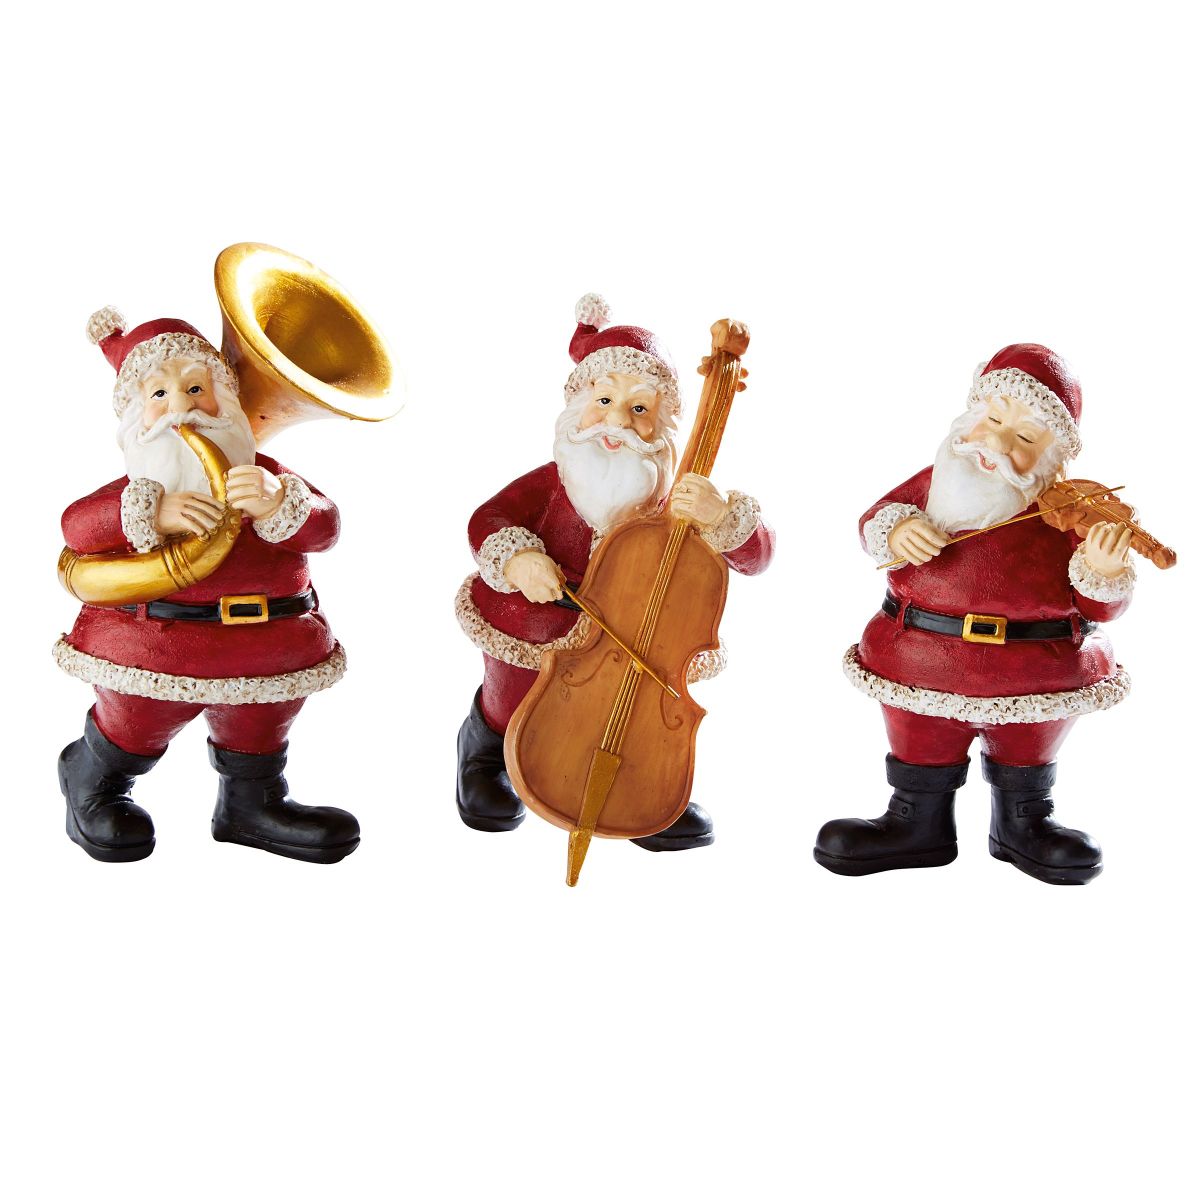 Dekofiguren-Set musizierende Santas, 3 tlg. Maße: Santa mit Violine ca. B9 x T7 x H 3 cm, Santa mit Tuba ca. B9 x T8 x H14 cm, Santa mit Kontrabass ca B9 x T8,5 x H13 cm, Gewicht: ca. 0,7 kg, Material: Polyresin (Kunststein).<br>